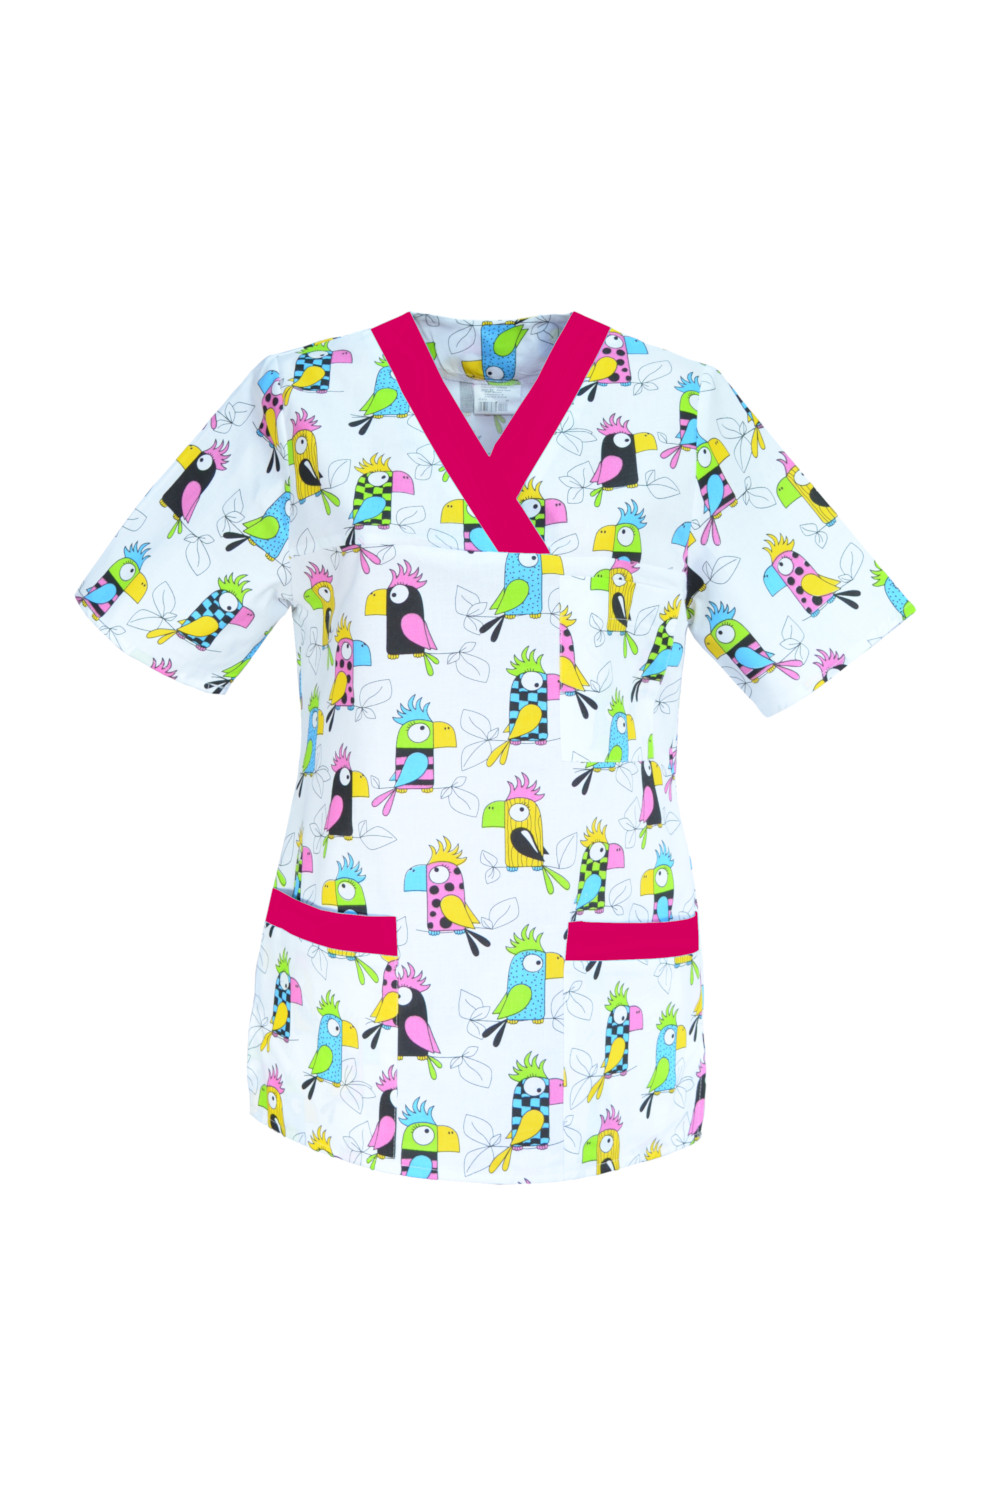 M-074G bluza medyczna damska we wzorki, kolorowa. Wzór papugi z amarantem